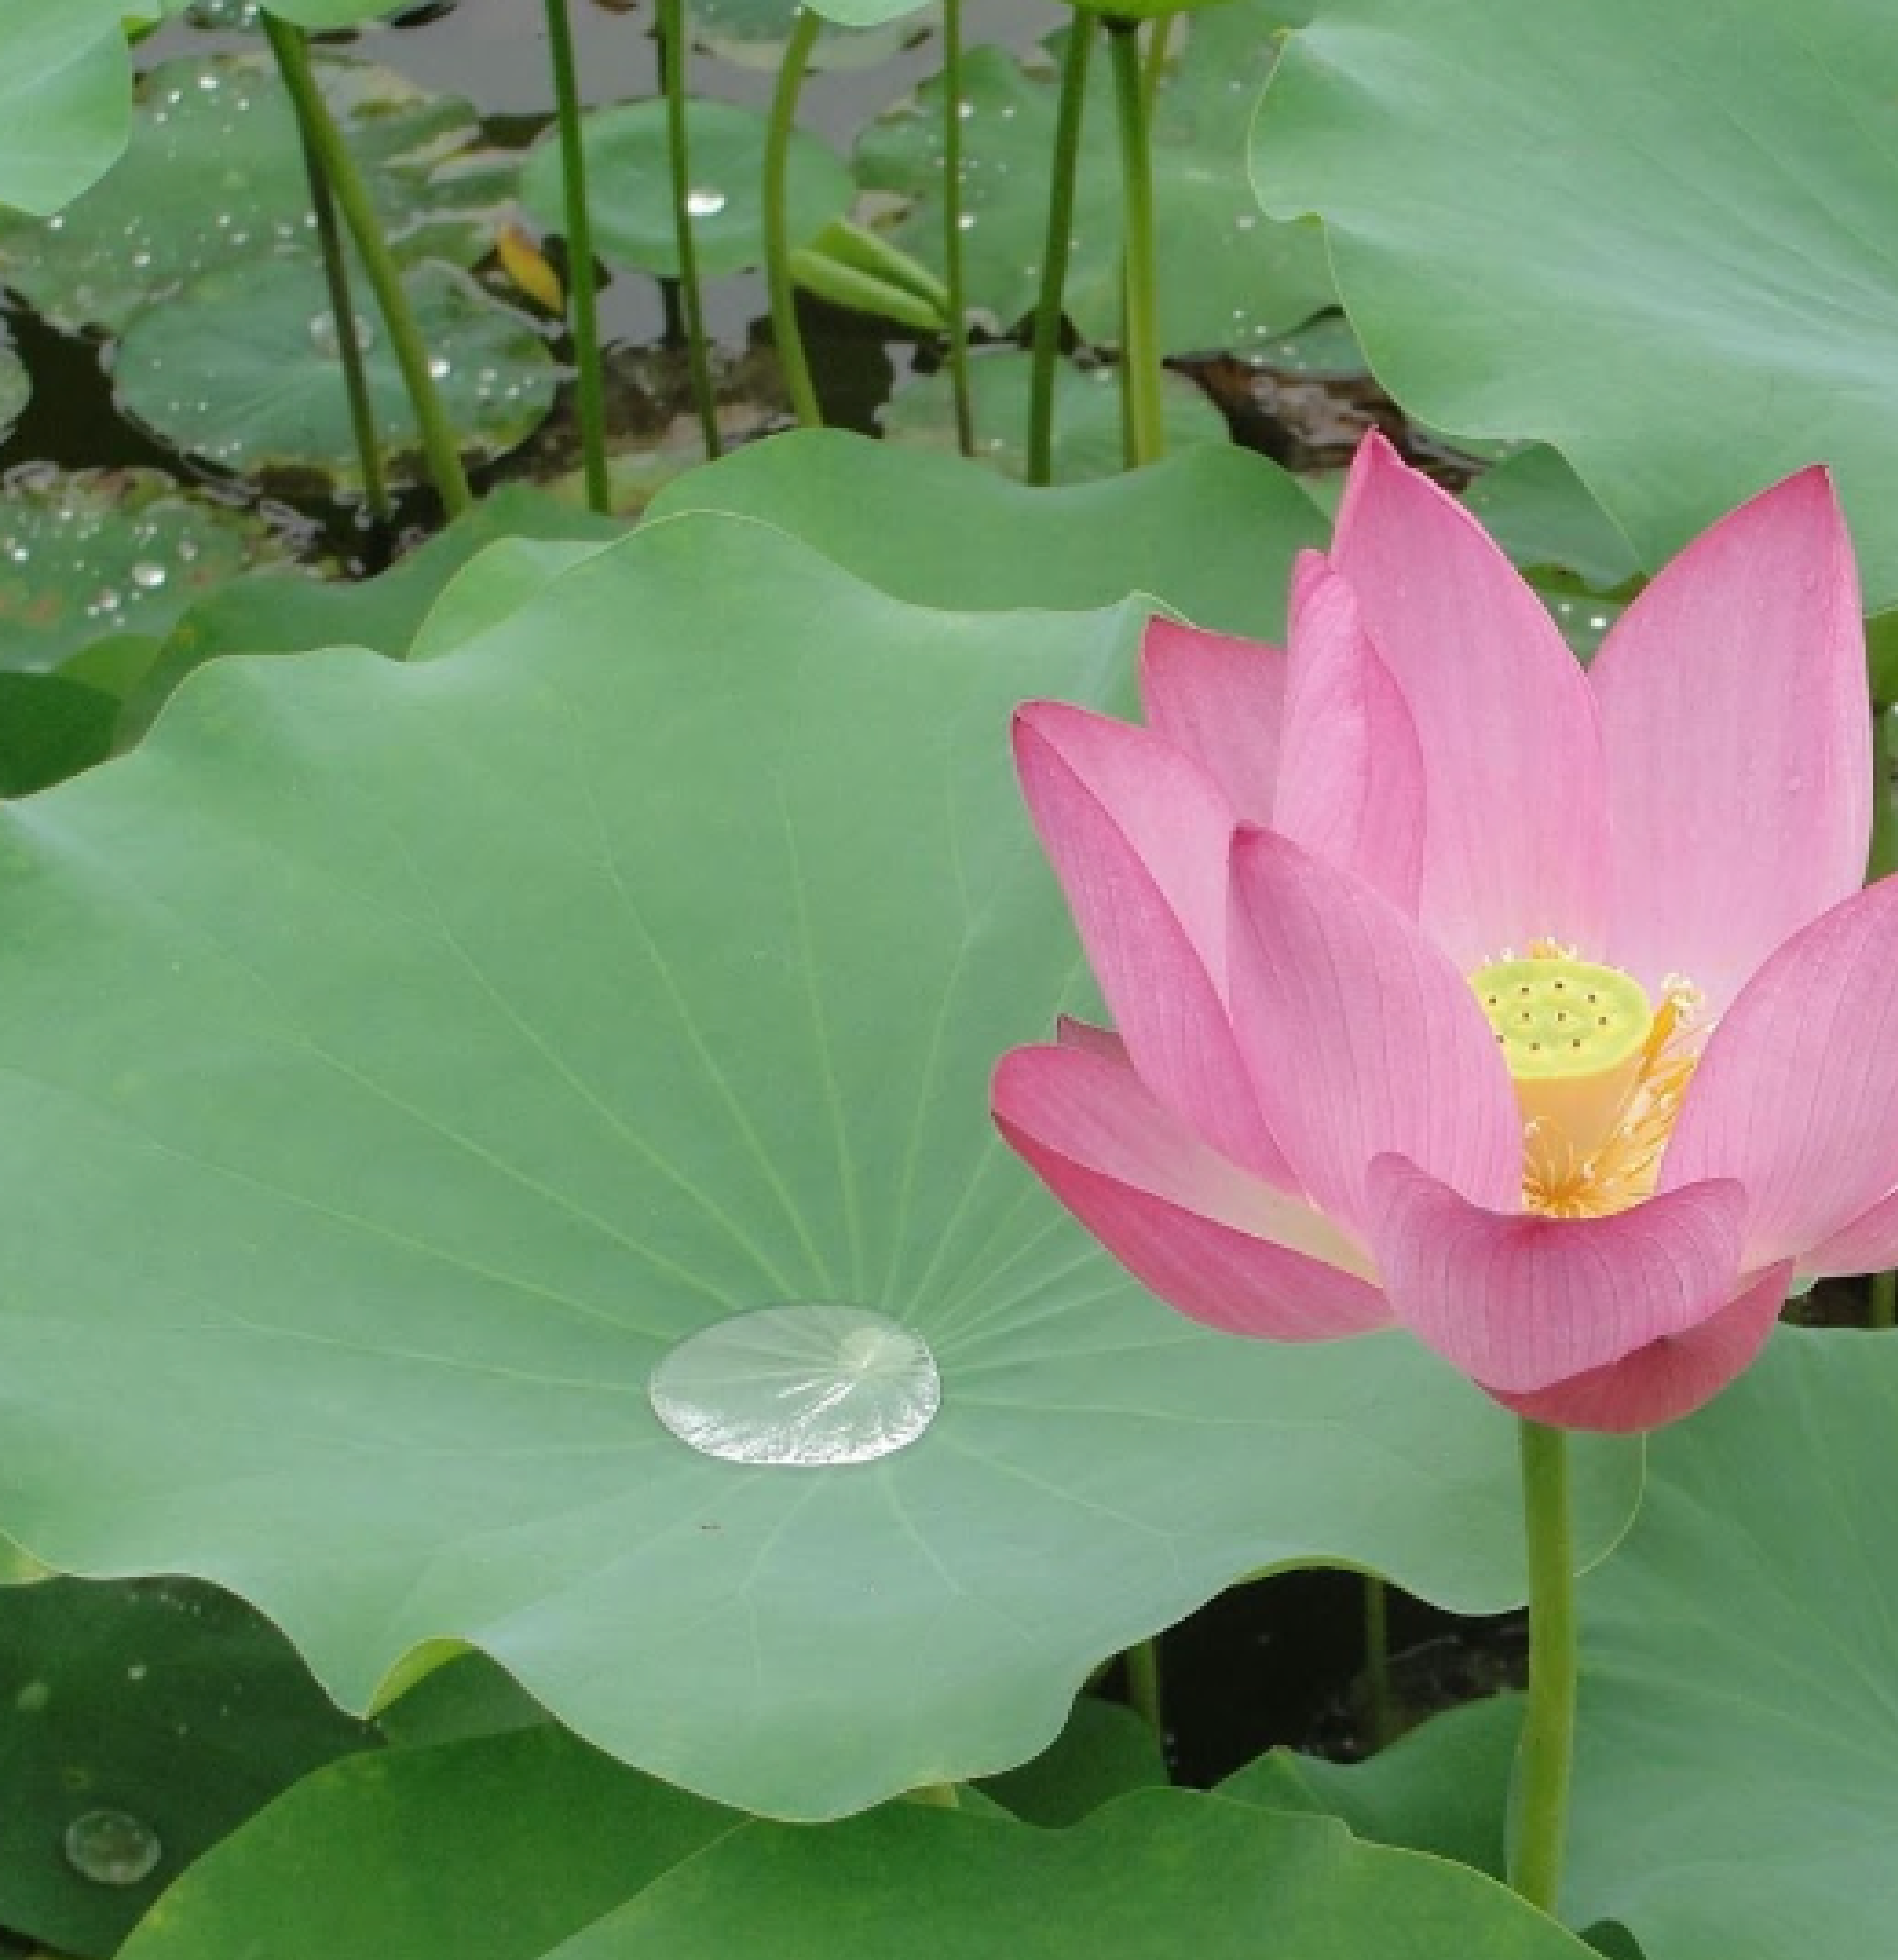 lotus leaf and flower